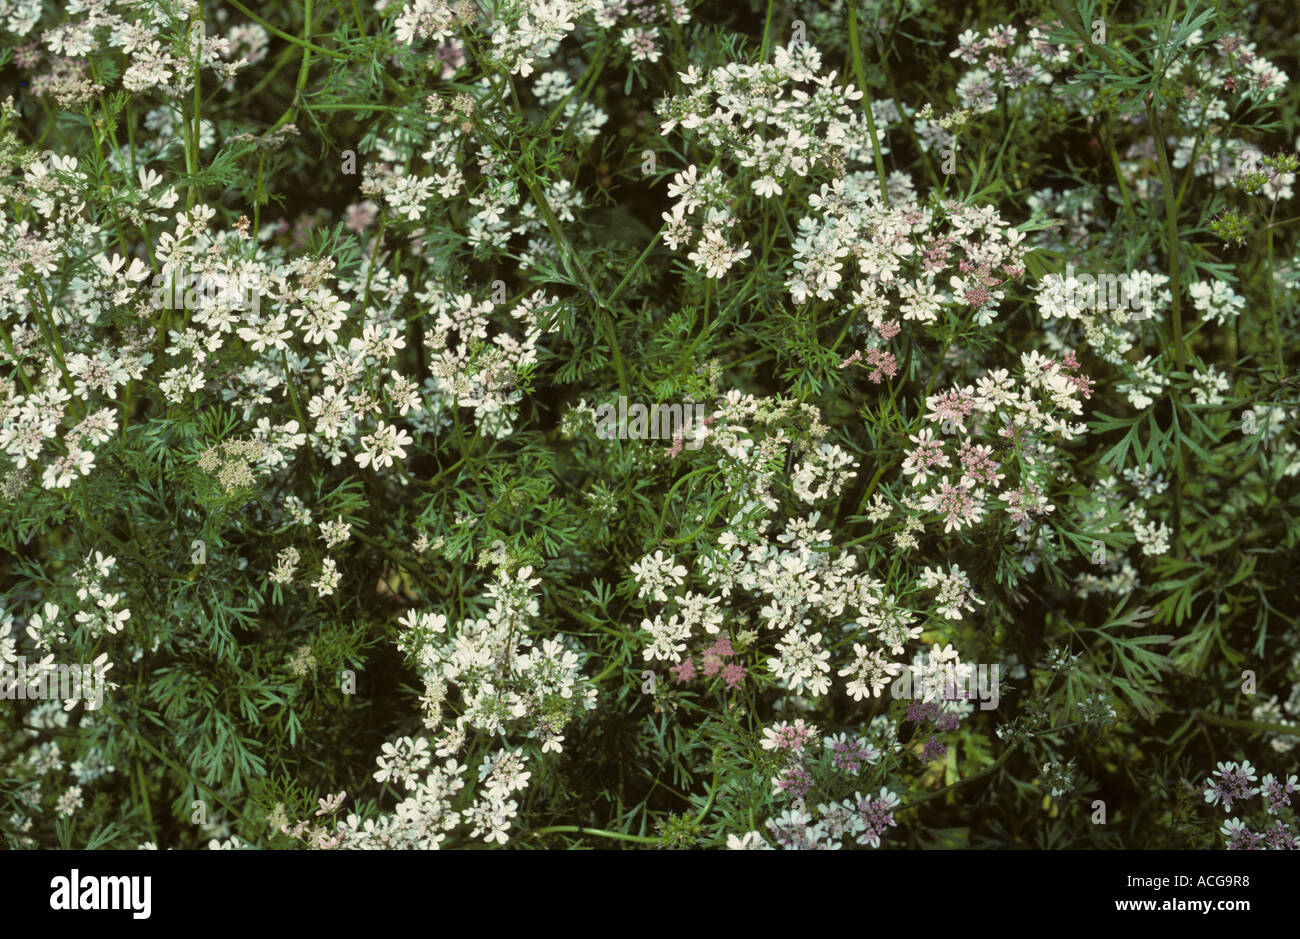 Flowering coriander crop Stock Photo